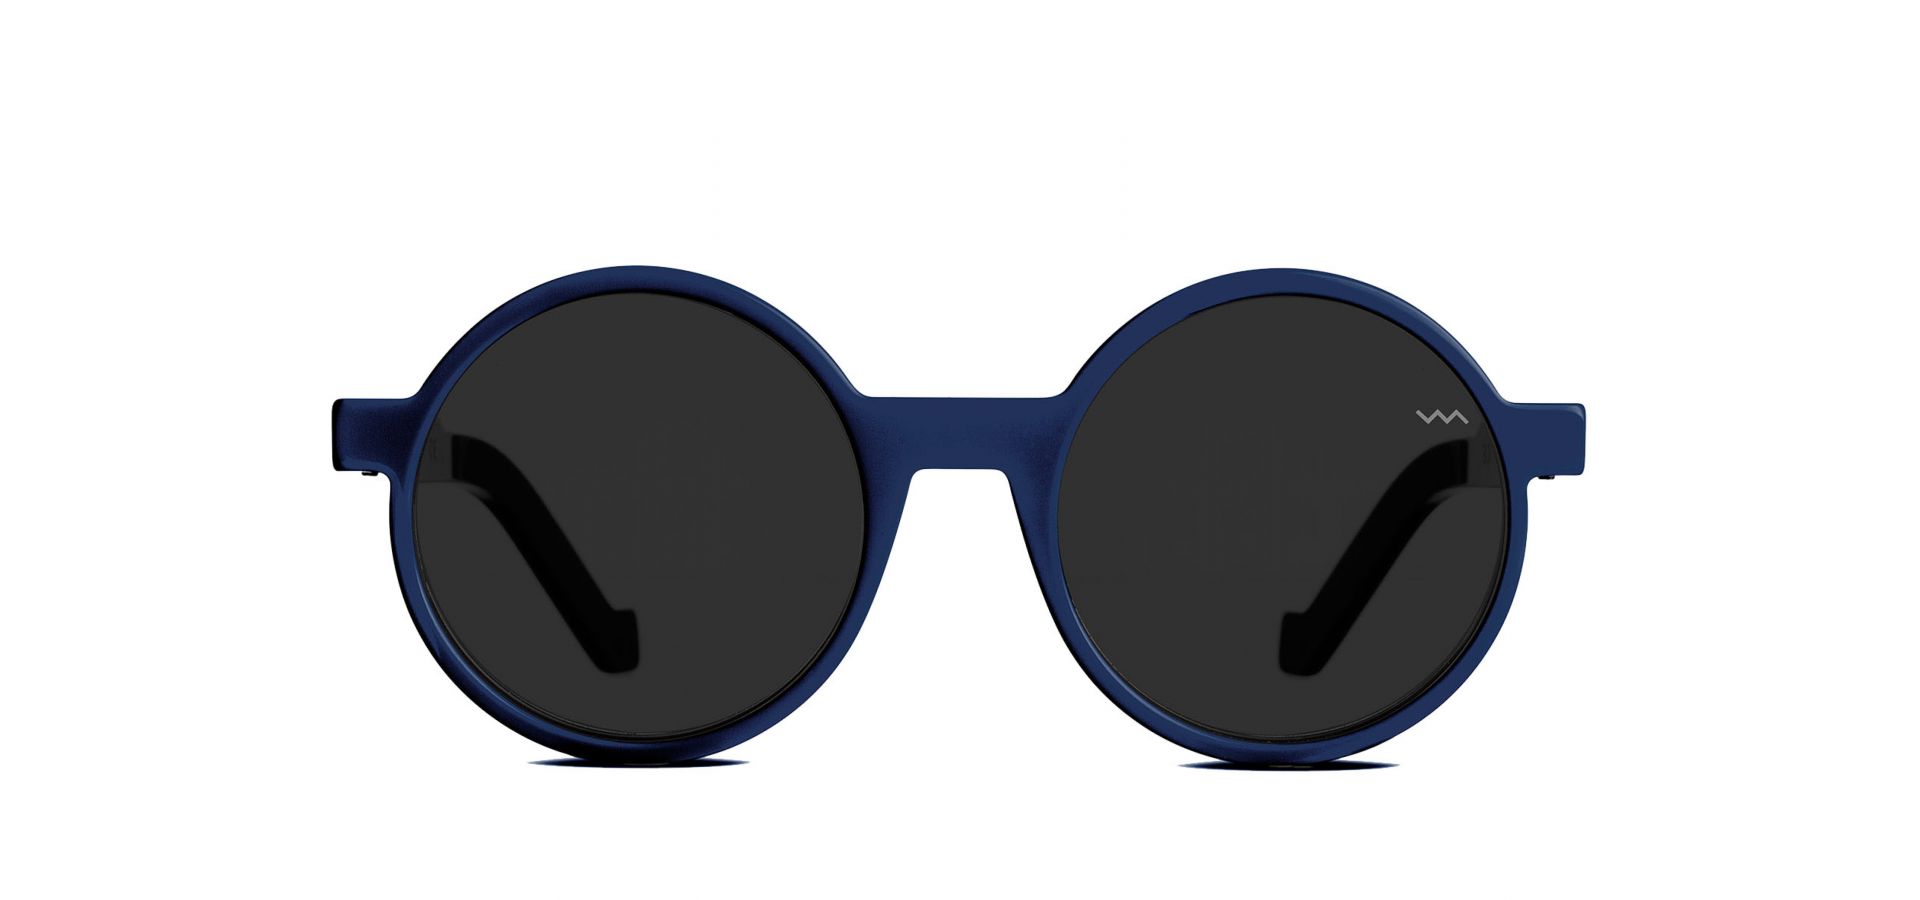 Sončna očala VAVA WL0000 NV BLUE BLACK: Velikost: 51/21/145, Spol: unisex, Material: acetat/kovinska